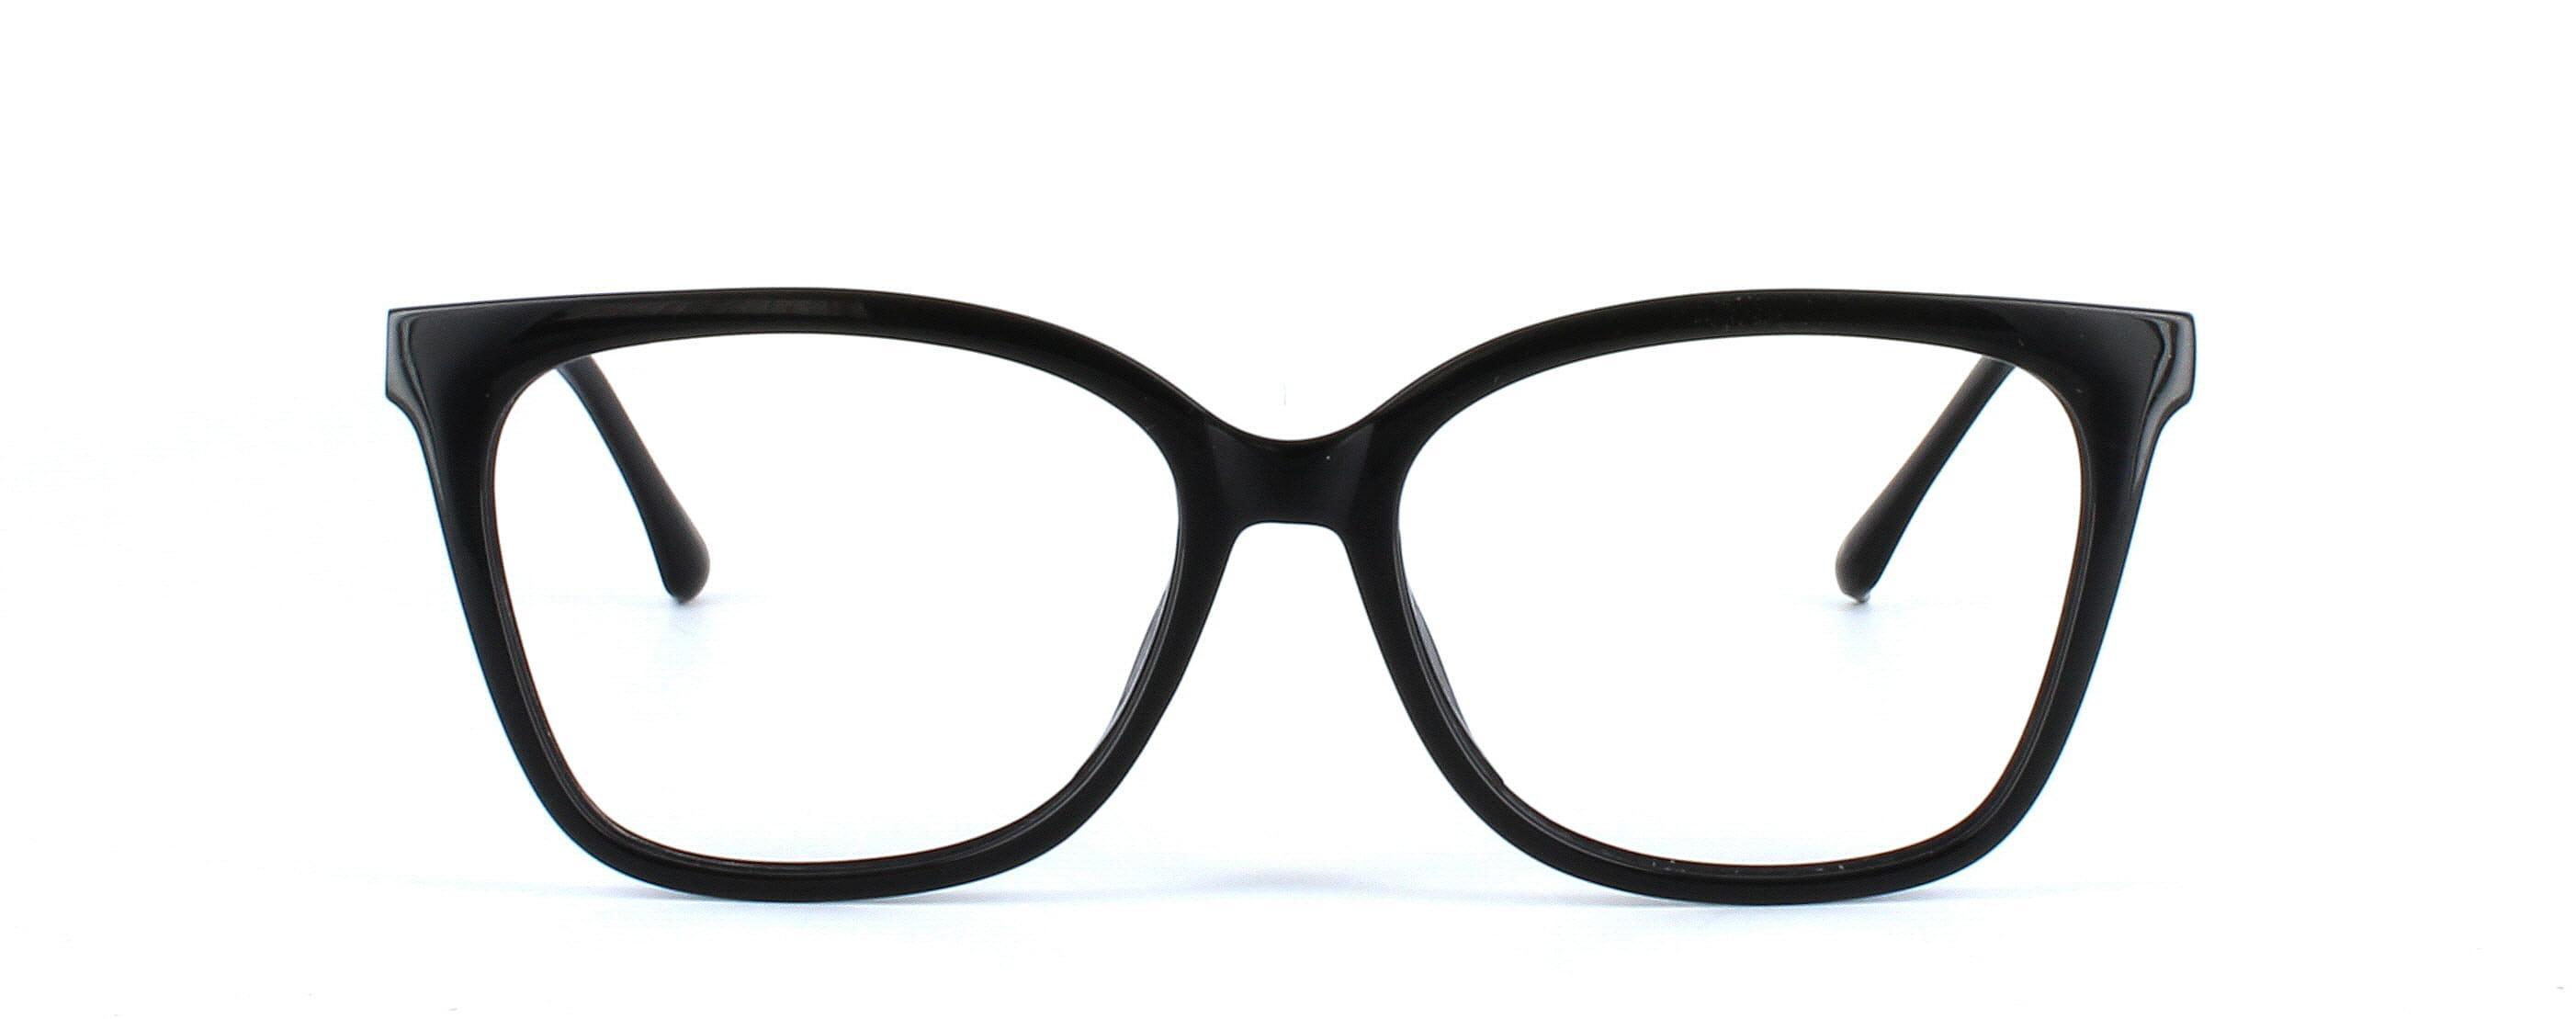 Carina - Ladies black plastic glasses - image view 5